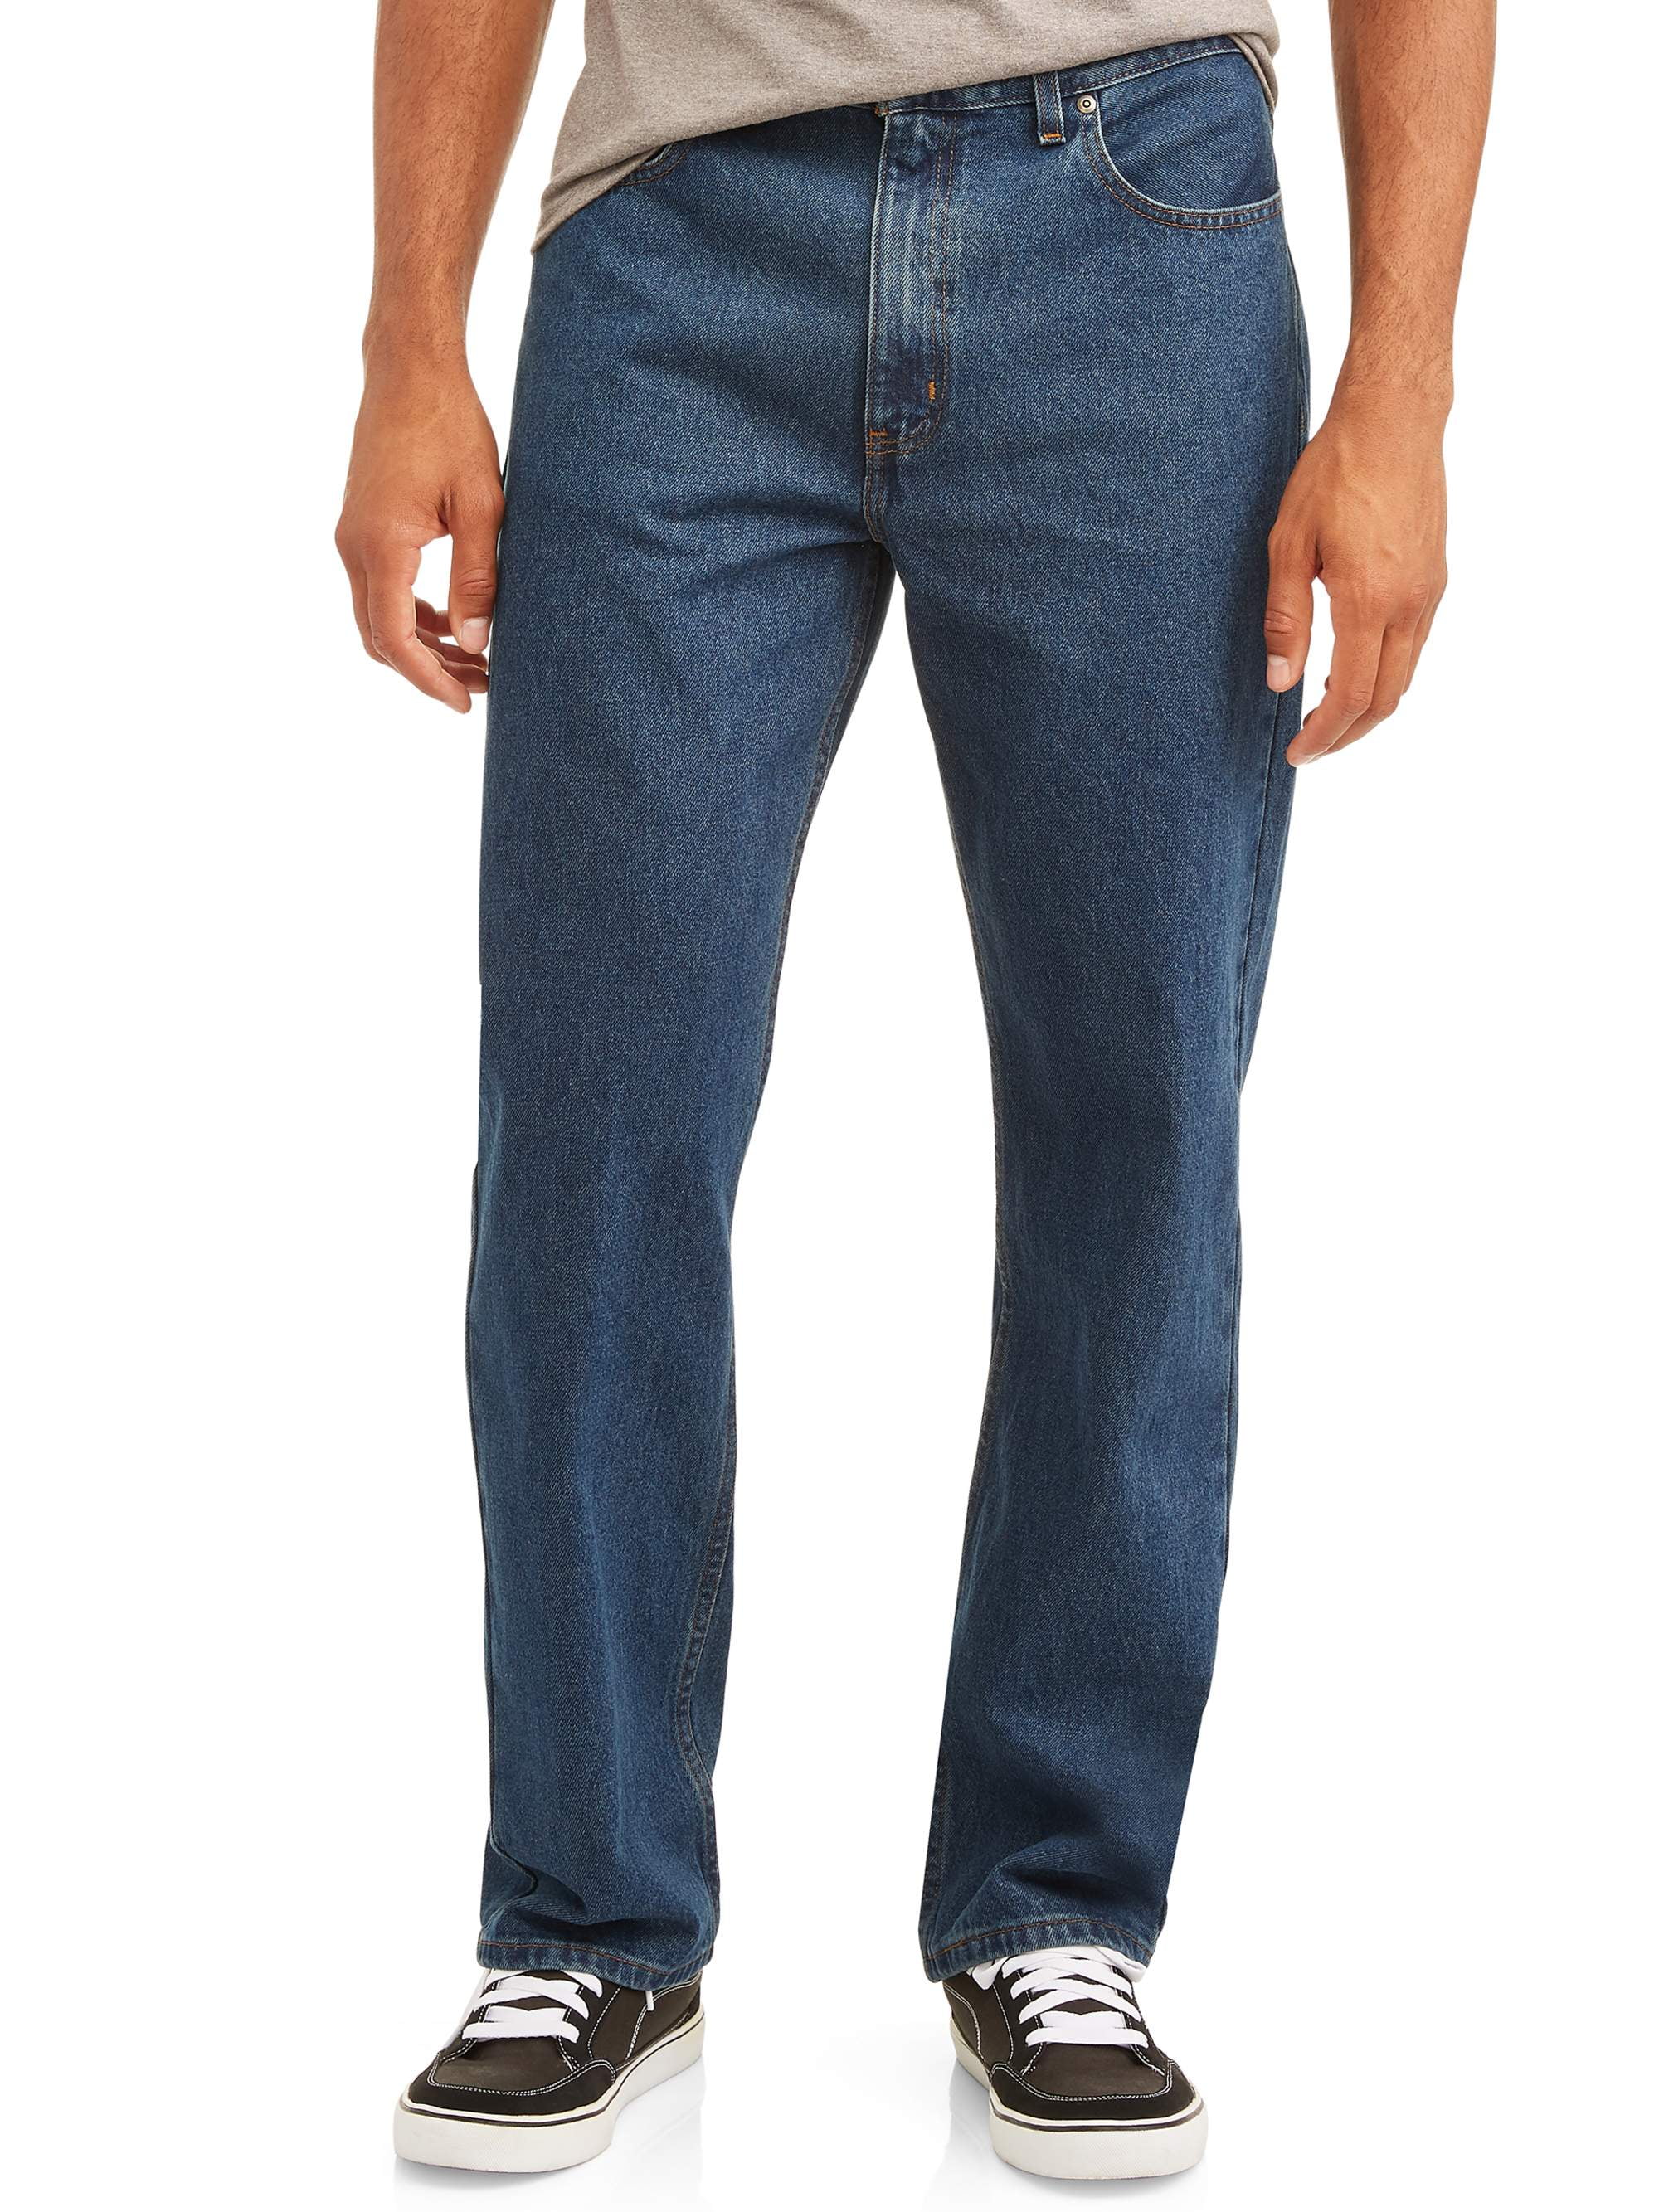 George Men's Basic Five Pocket Jeans - Walmart.com